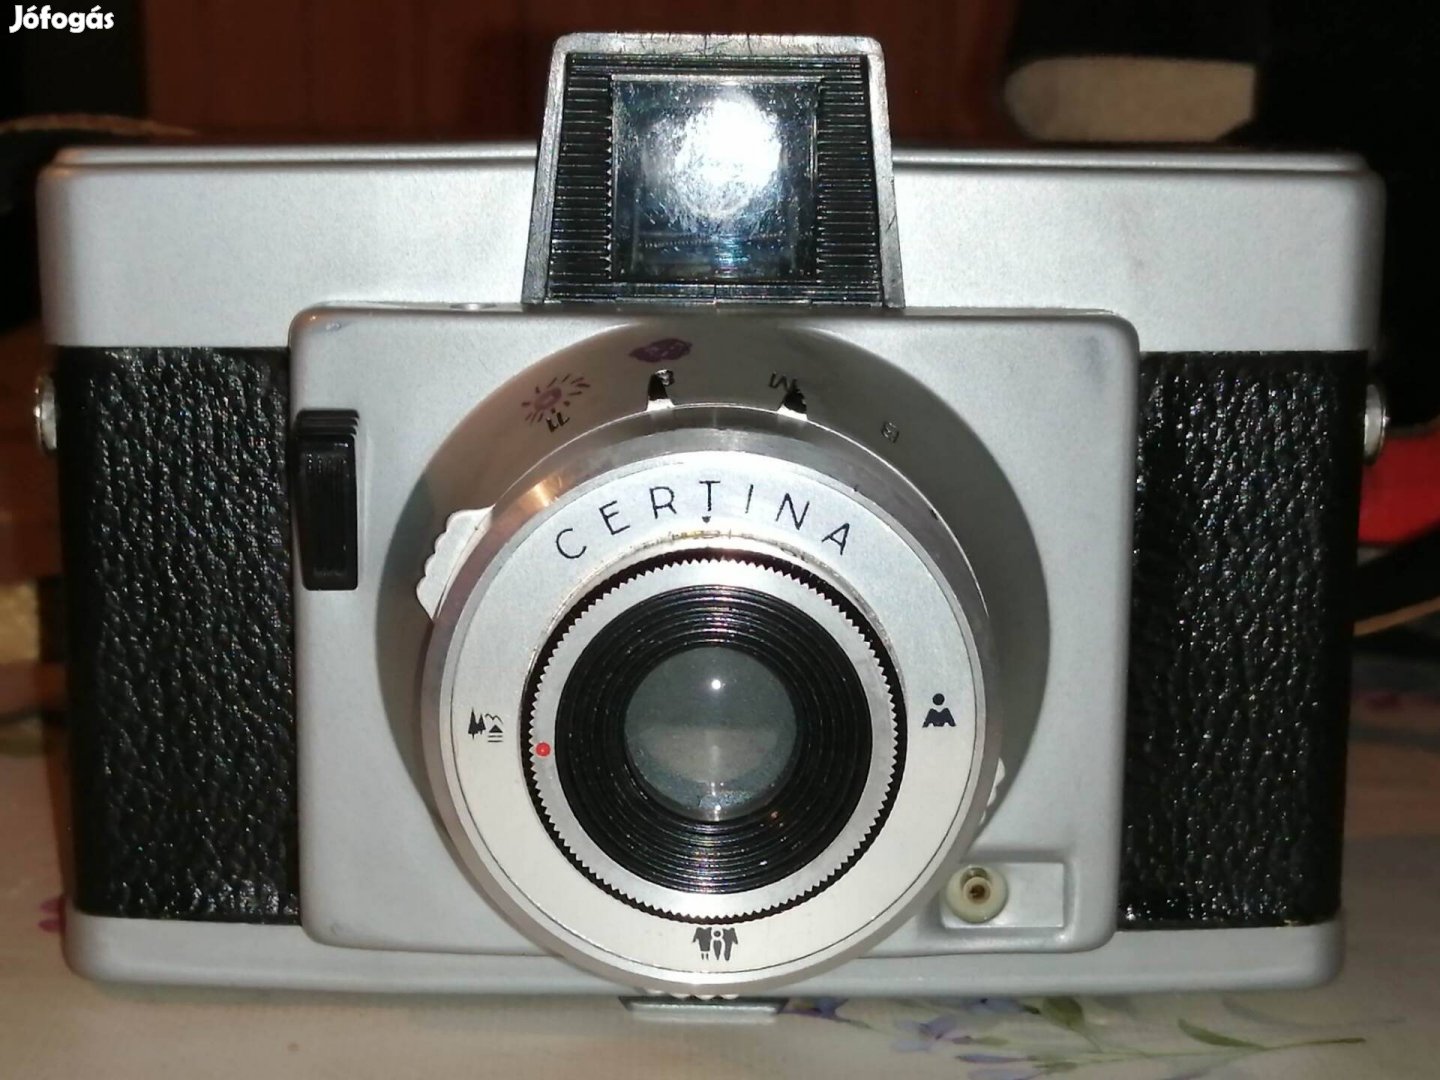 Certina fényképezőgép 